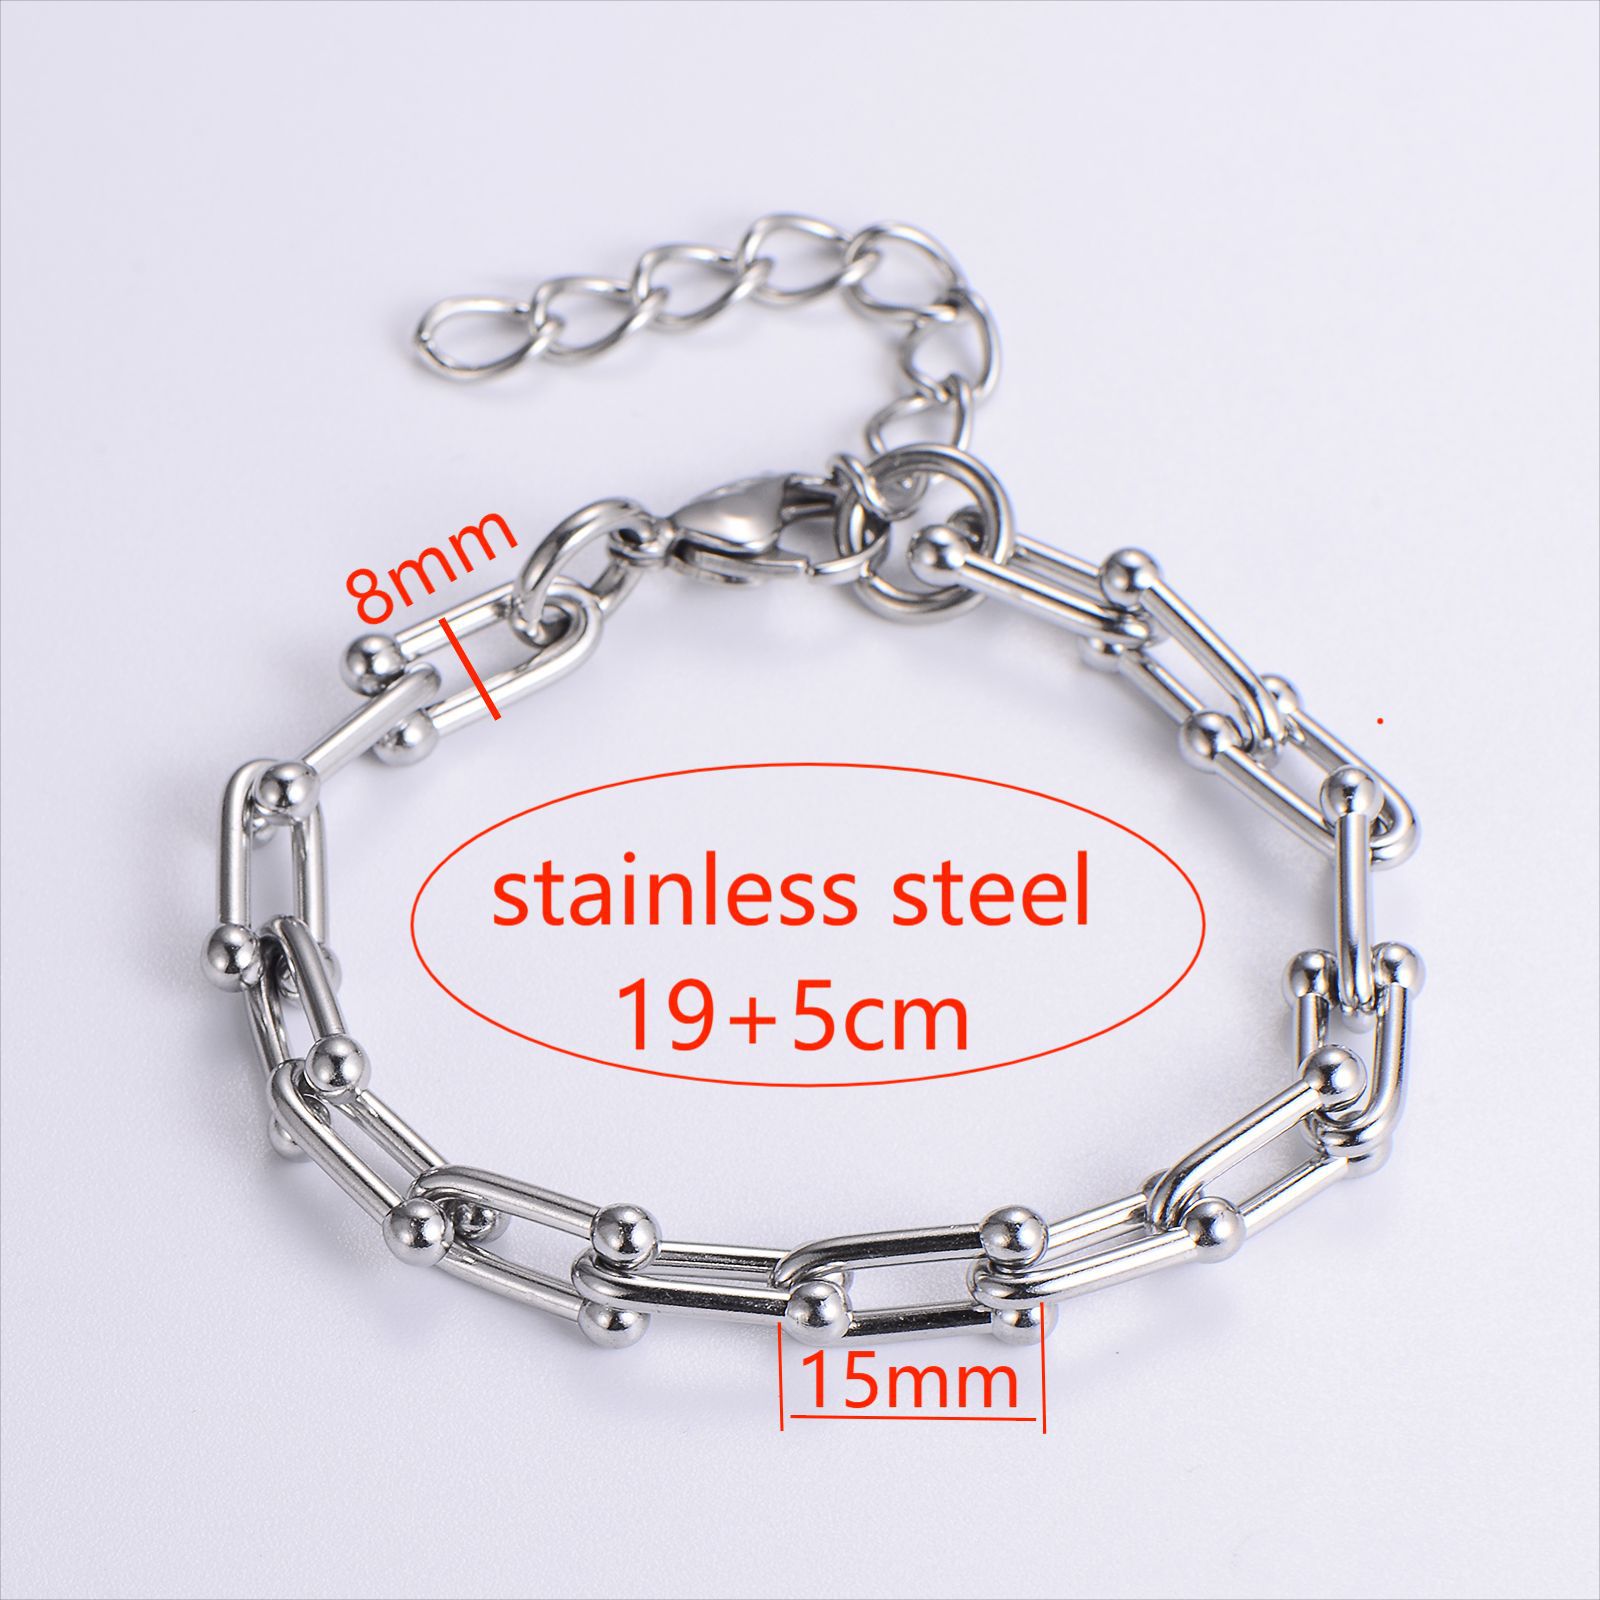 1:Steel bracelet